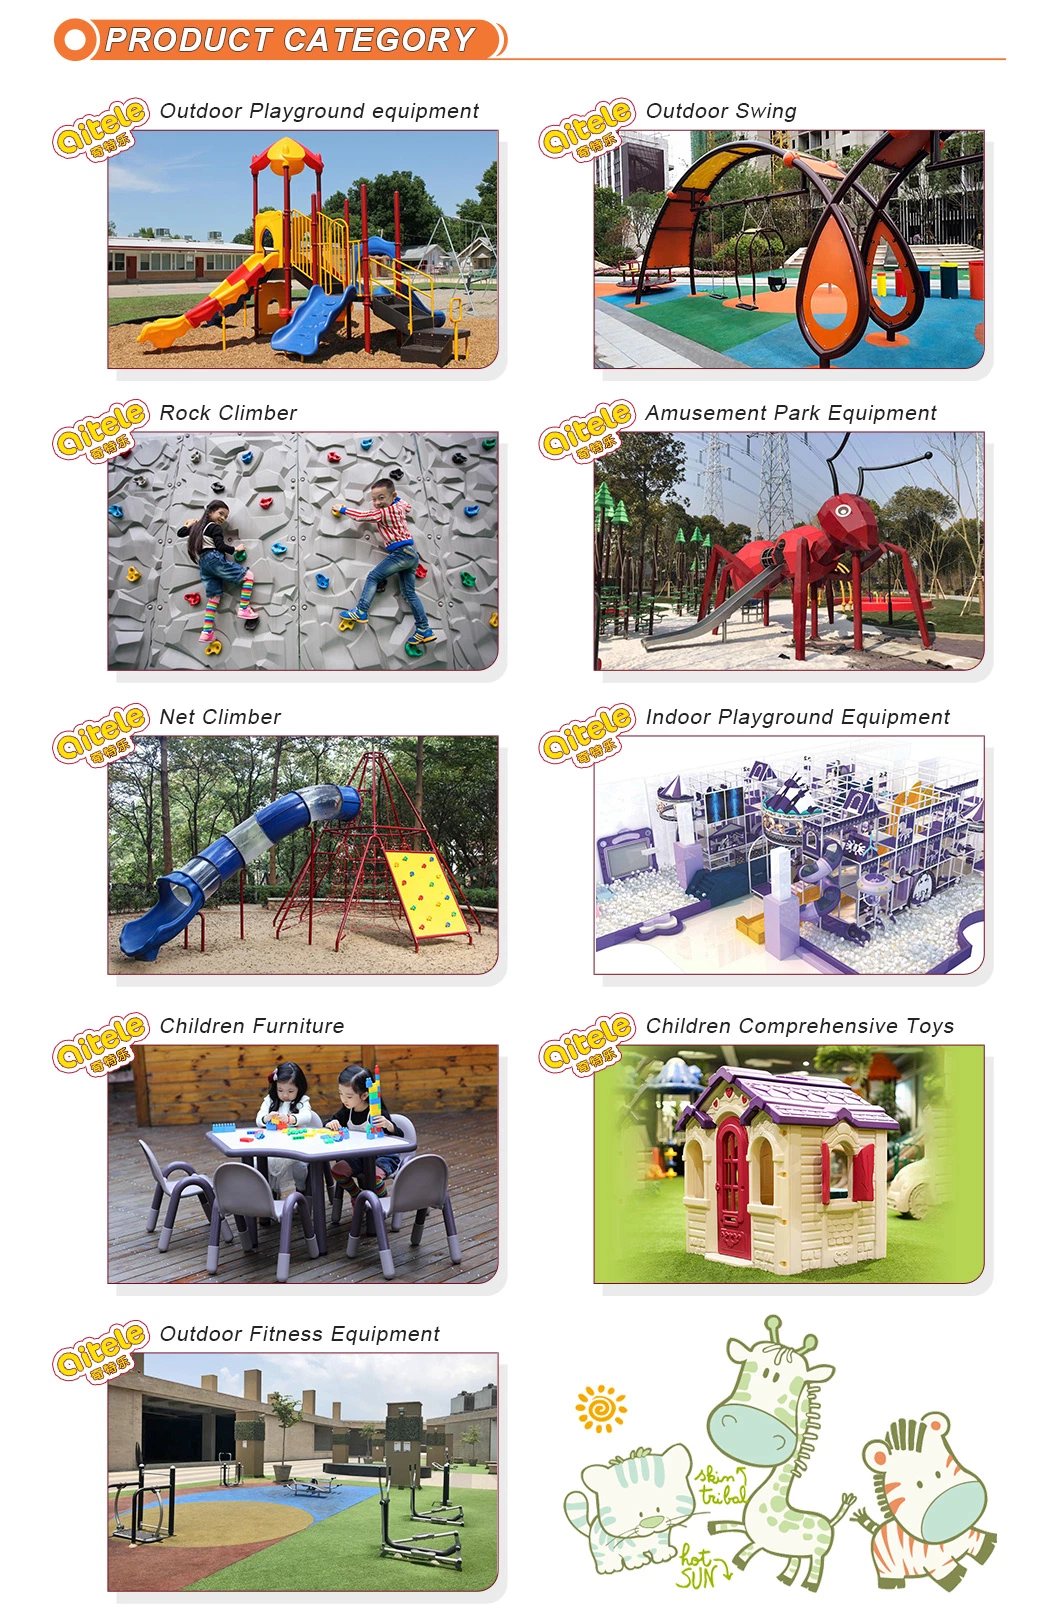 Outdoor Children Playground Sets in Amusement Playground